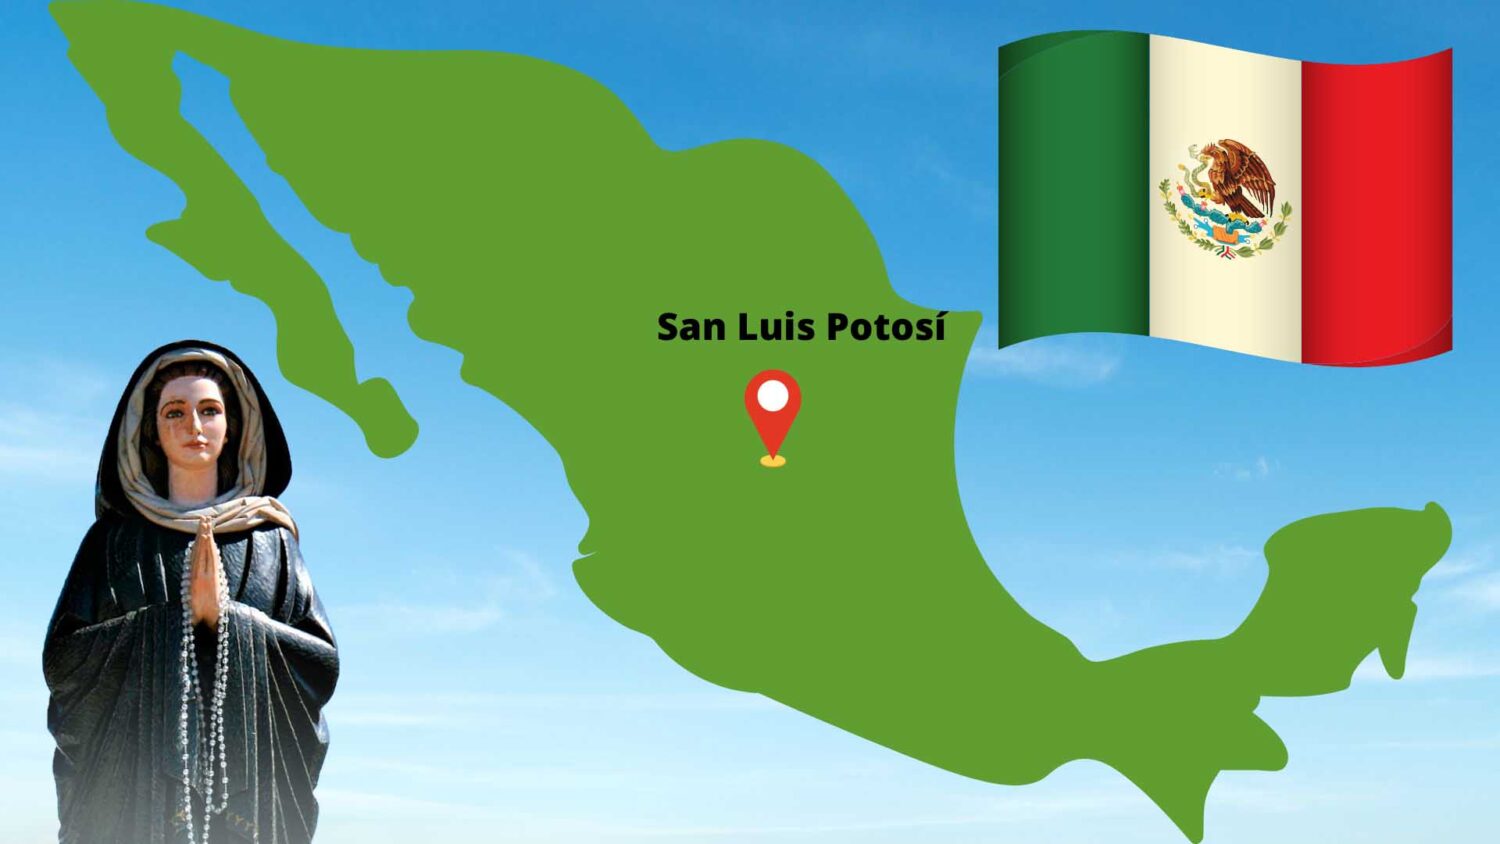 San Luis Potosí méxico virgen de el escorial prado nuevo